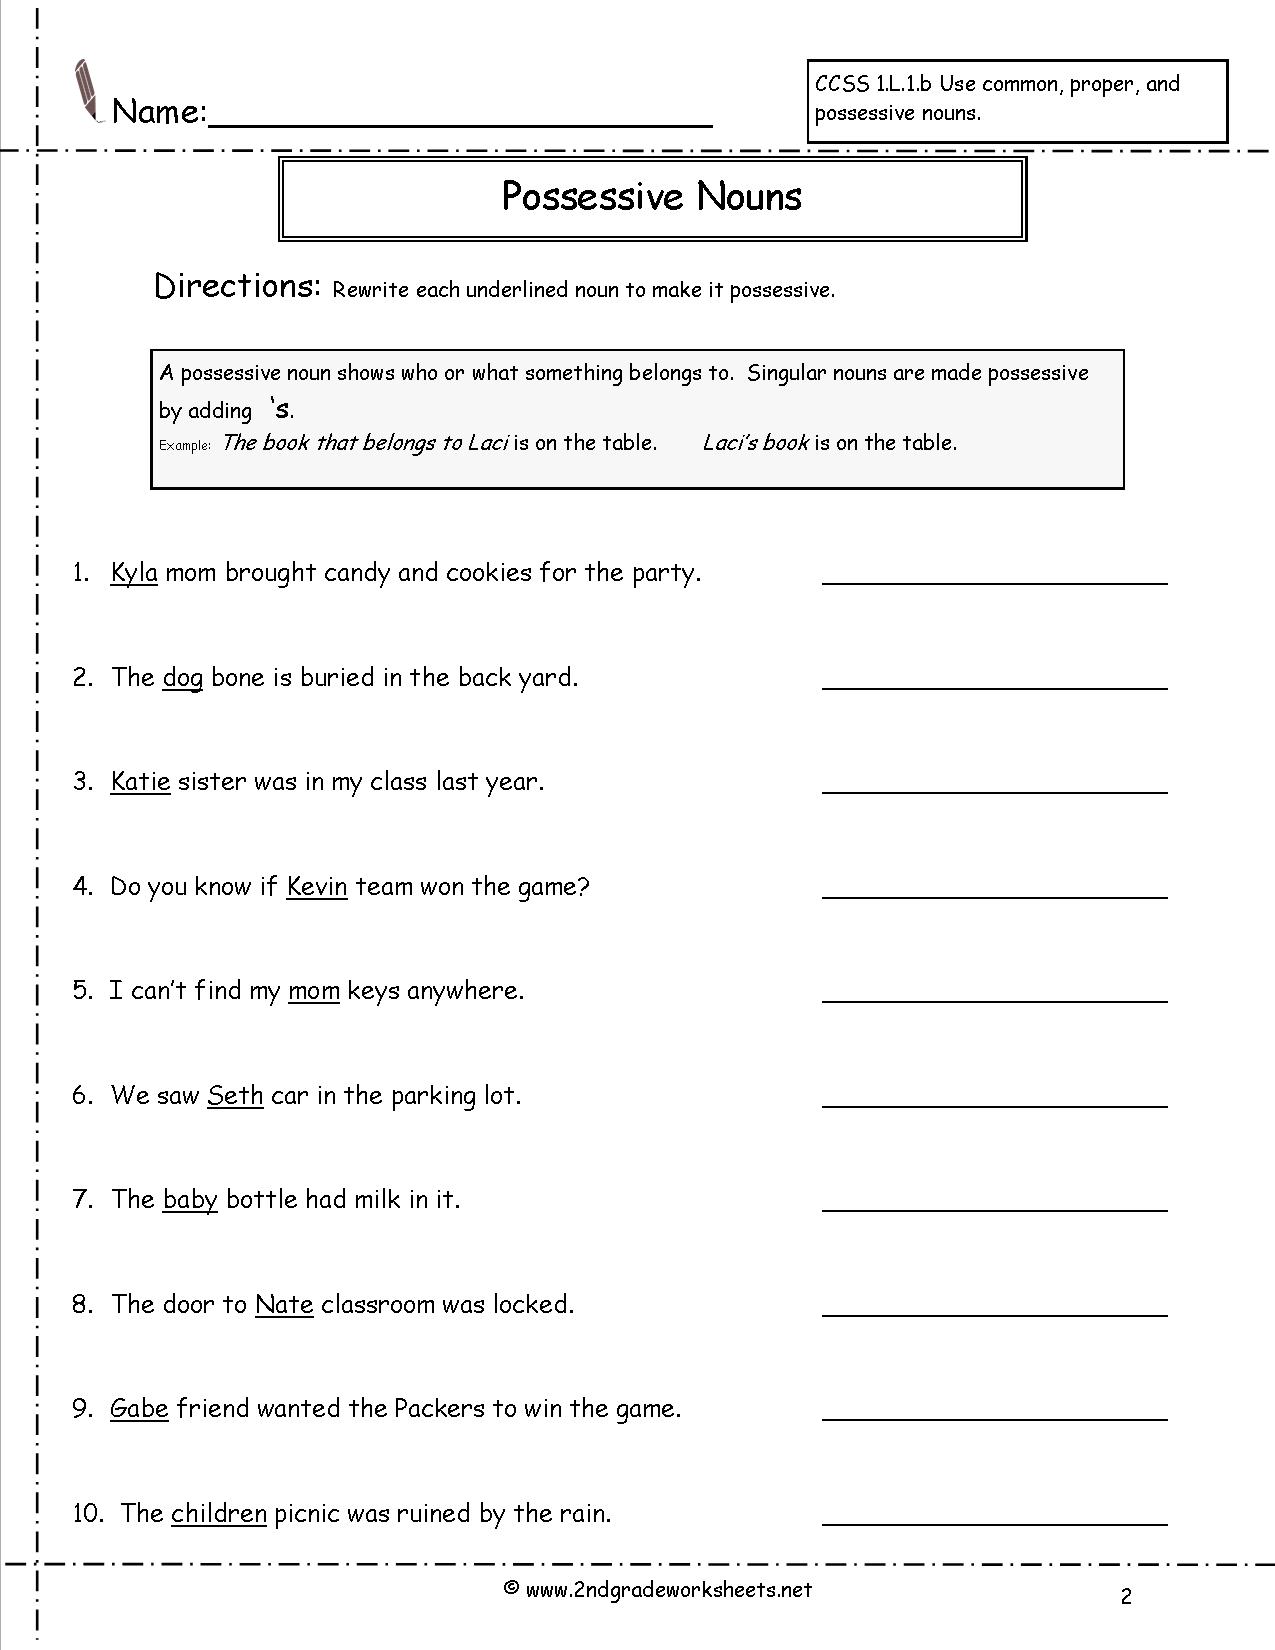 Possessive Nouns 2nd Grade Worksheets The Best Worksheets Image